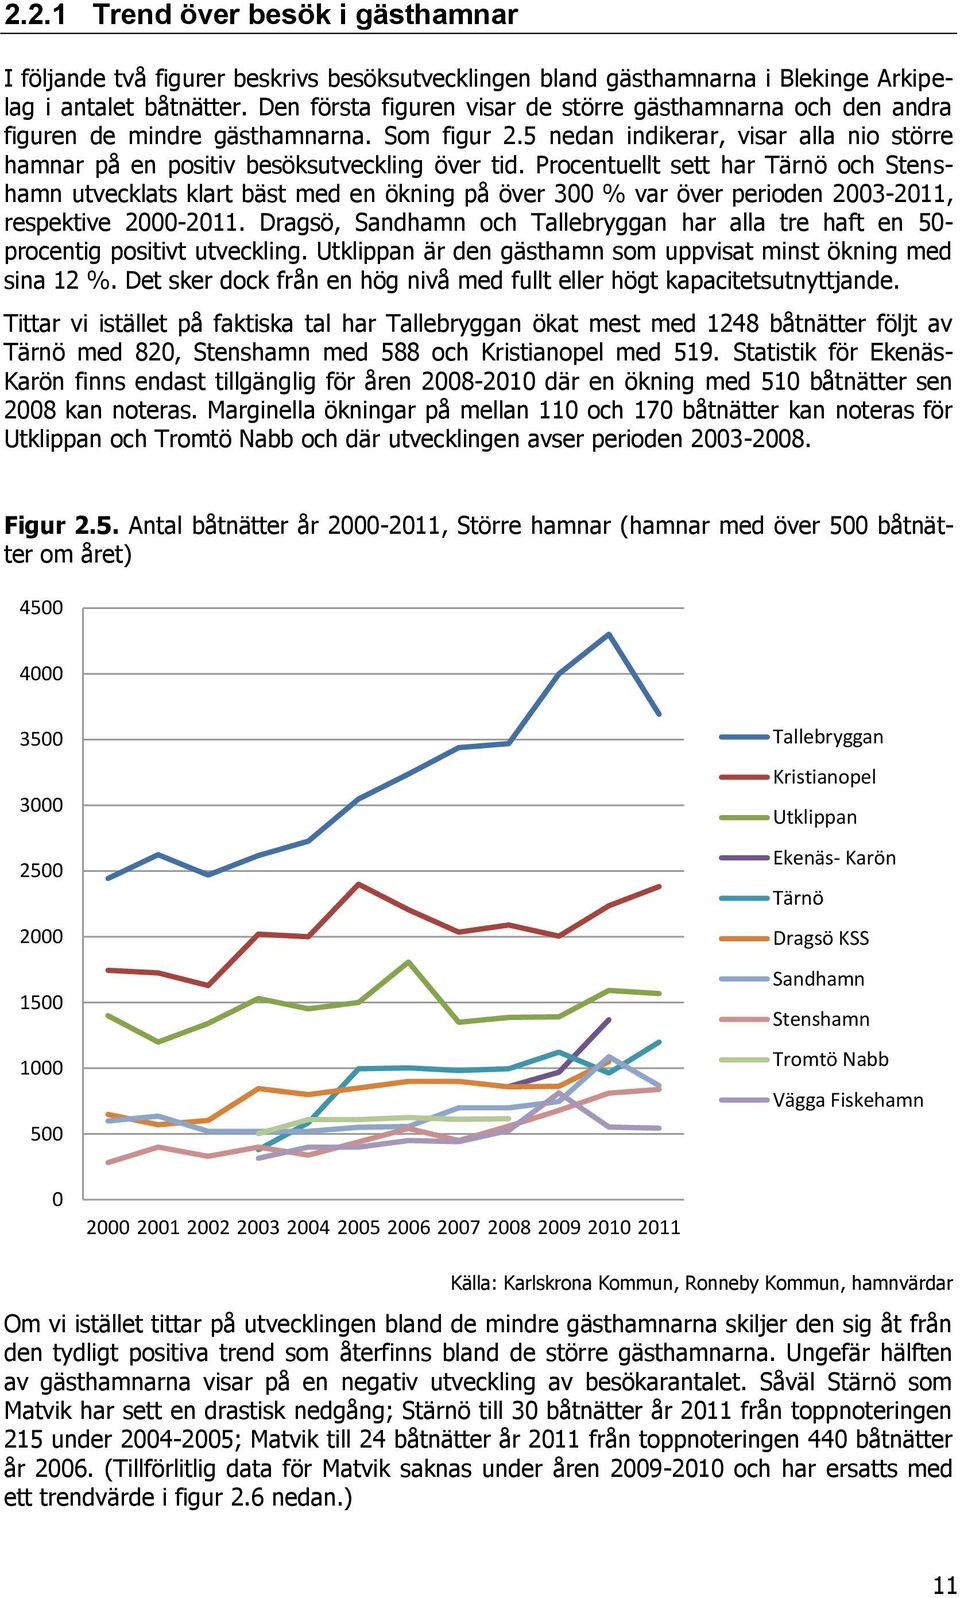 Procentuellt sett har Tärnö och Stenshamn utvecklats klart bäst med en ökning på över 300 % var över perioden 2003-2011, respektive 2000-2011.